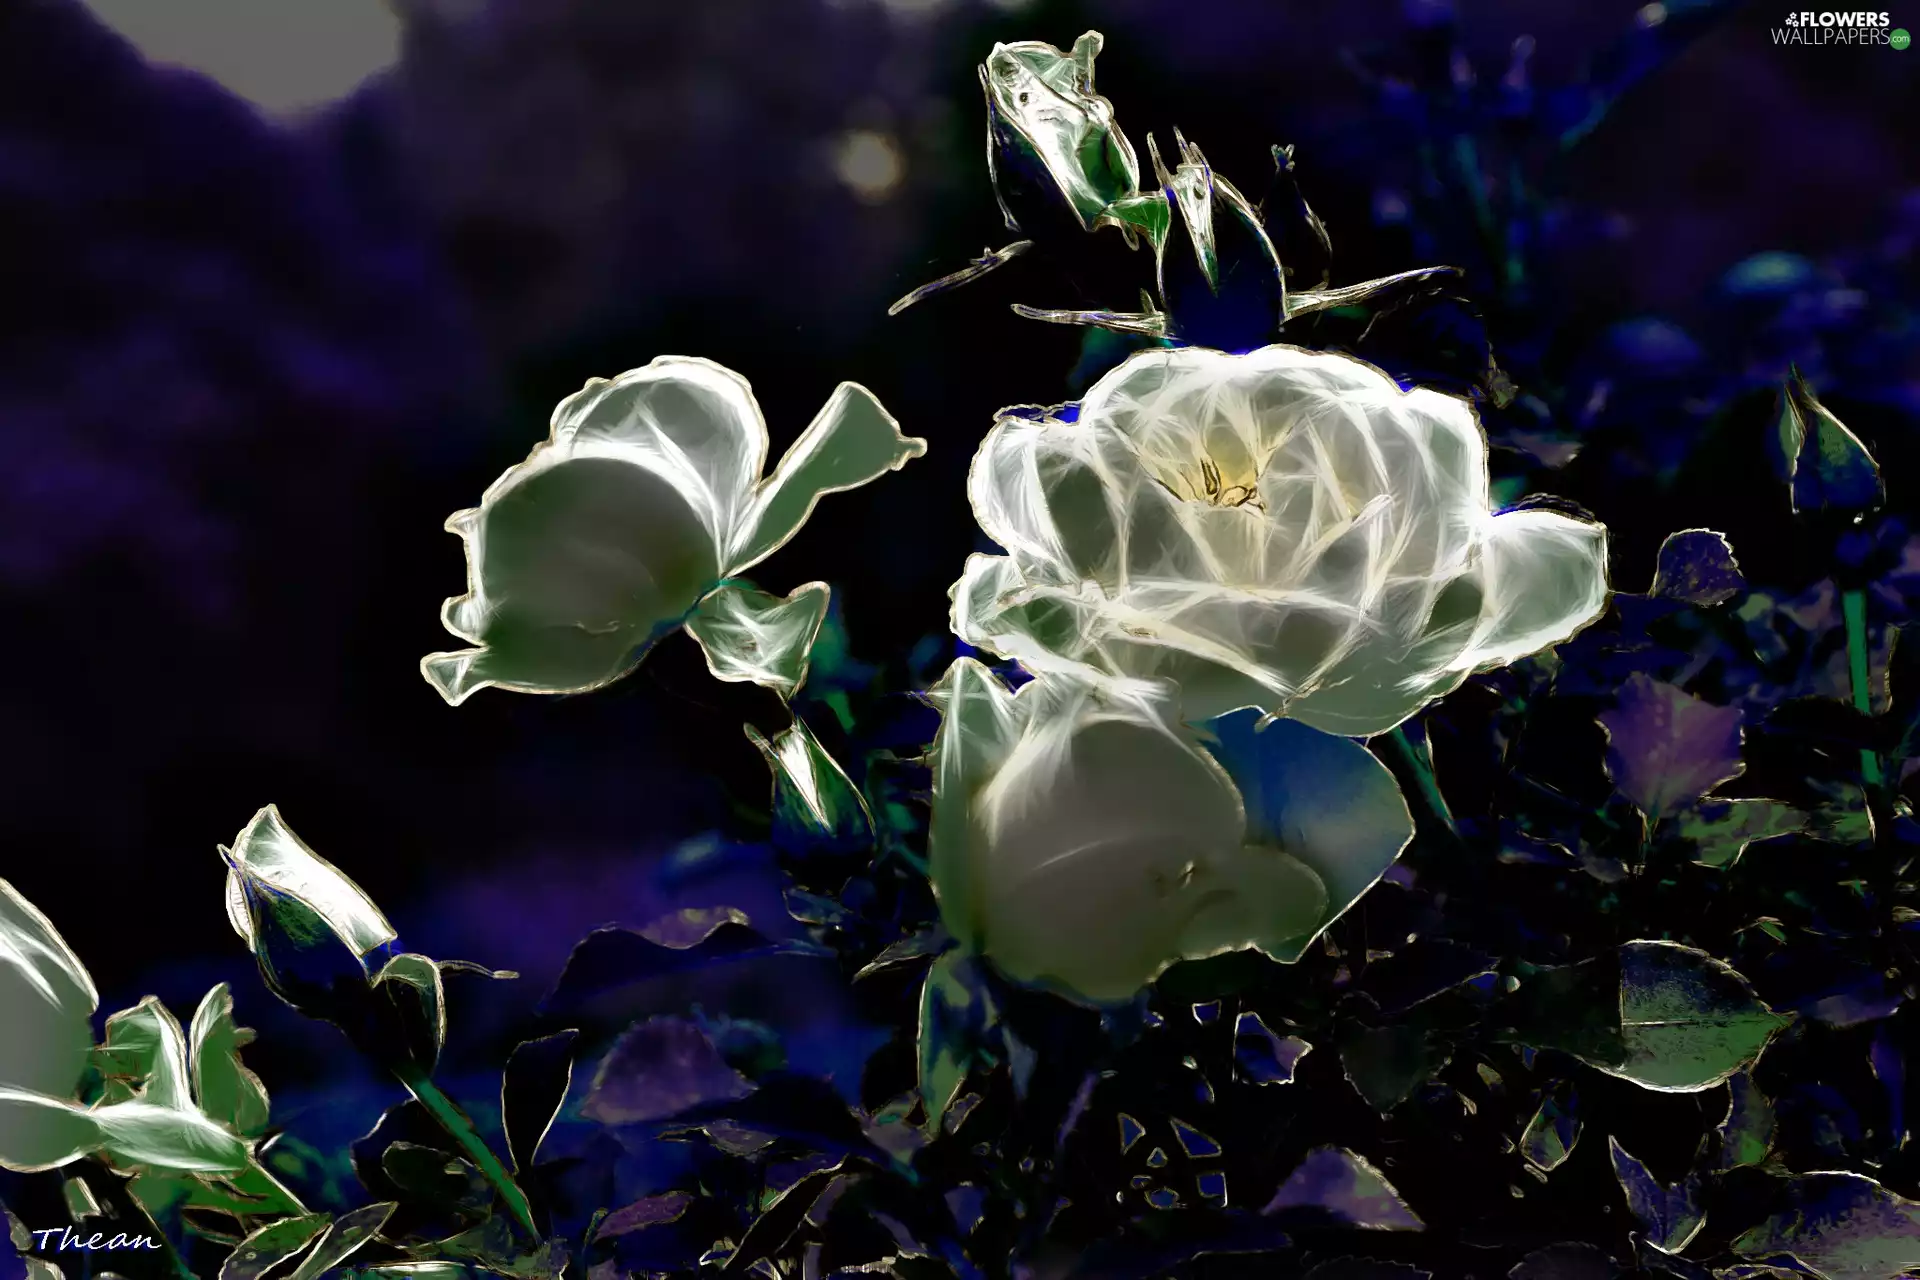 Fractalius, White, roses